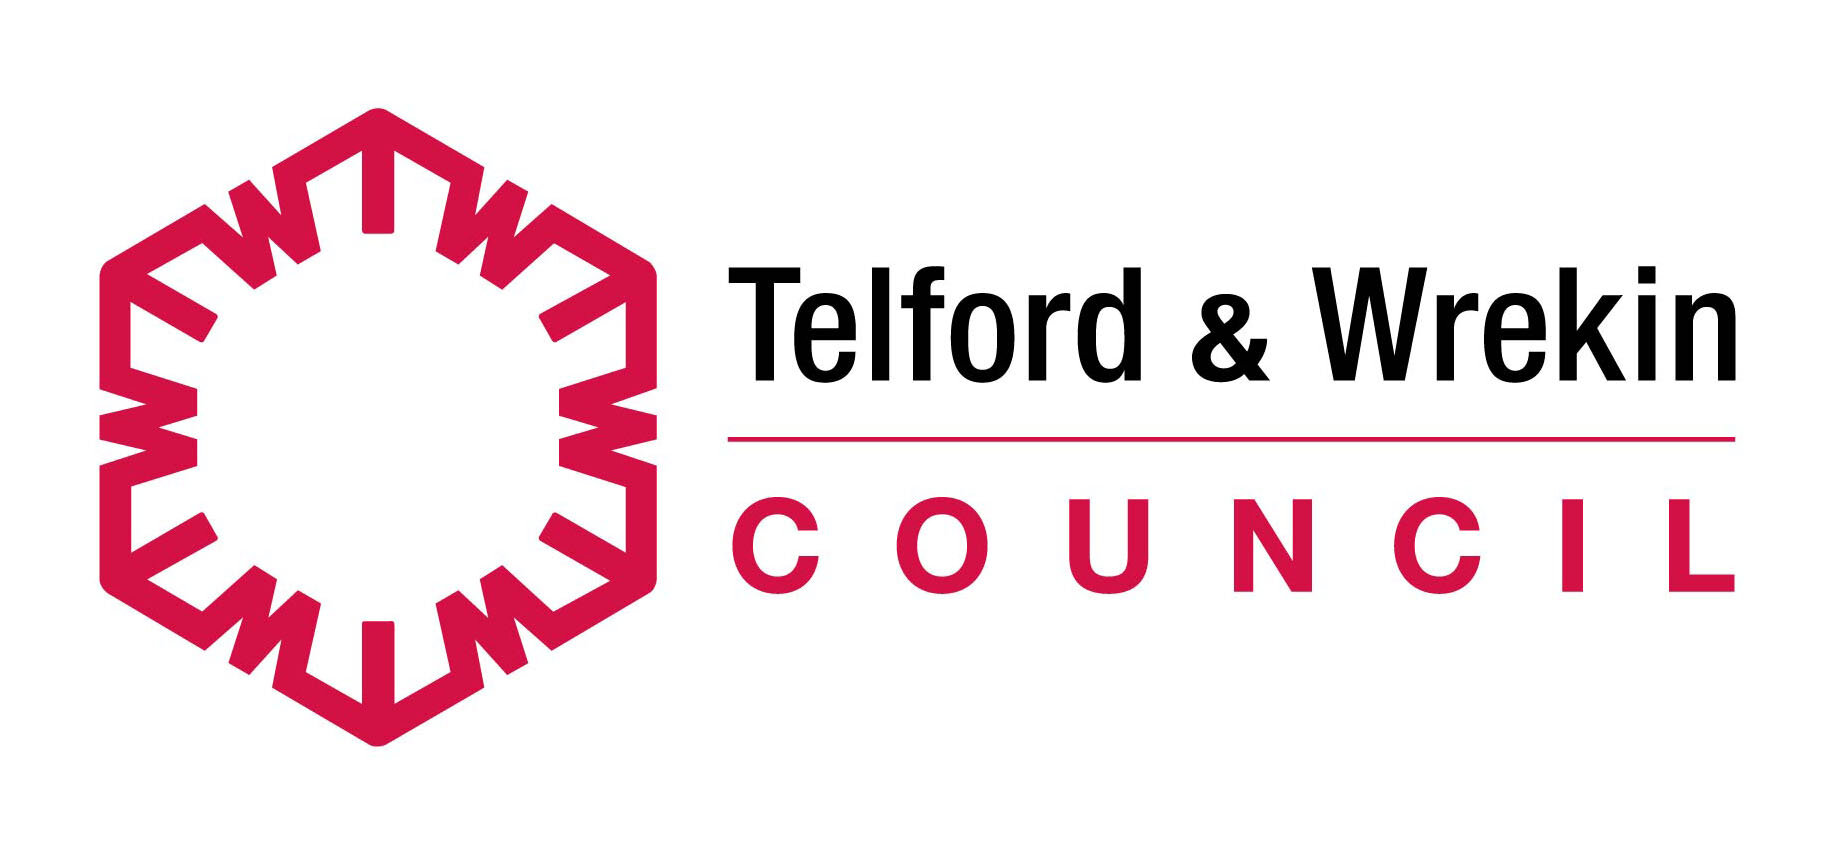 Telford-and-Wrekin-council.jpg